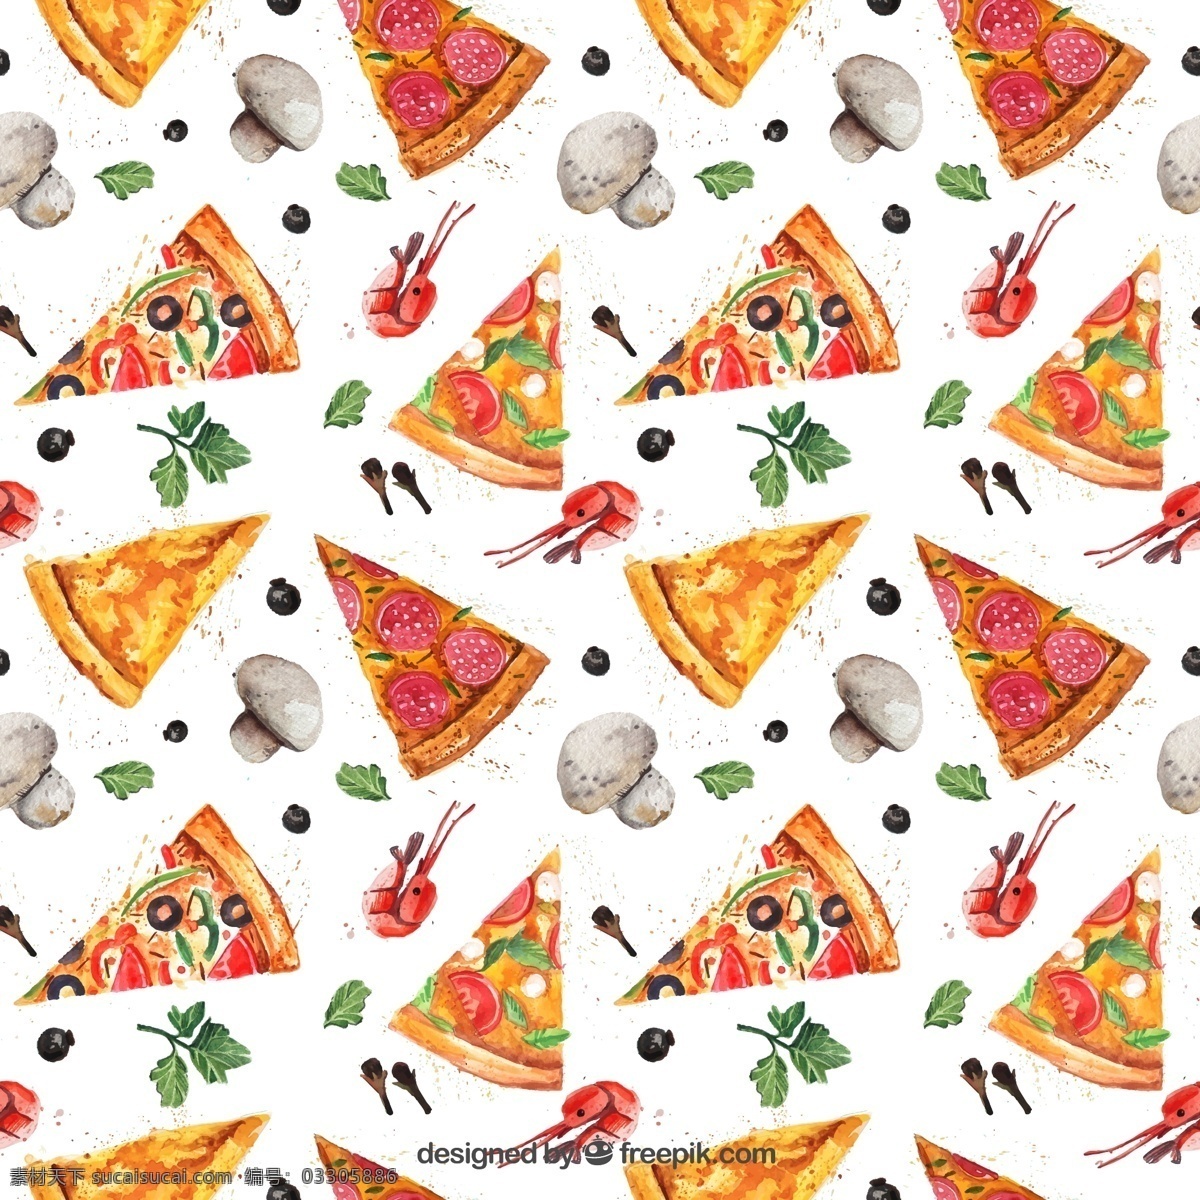 披萨无缝背景 披萨背景 三角披萨饼 快餐食品 无缝背景 蘑菇 披萨 快餐